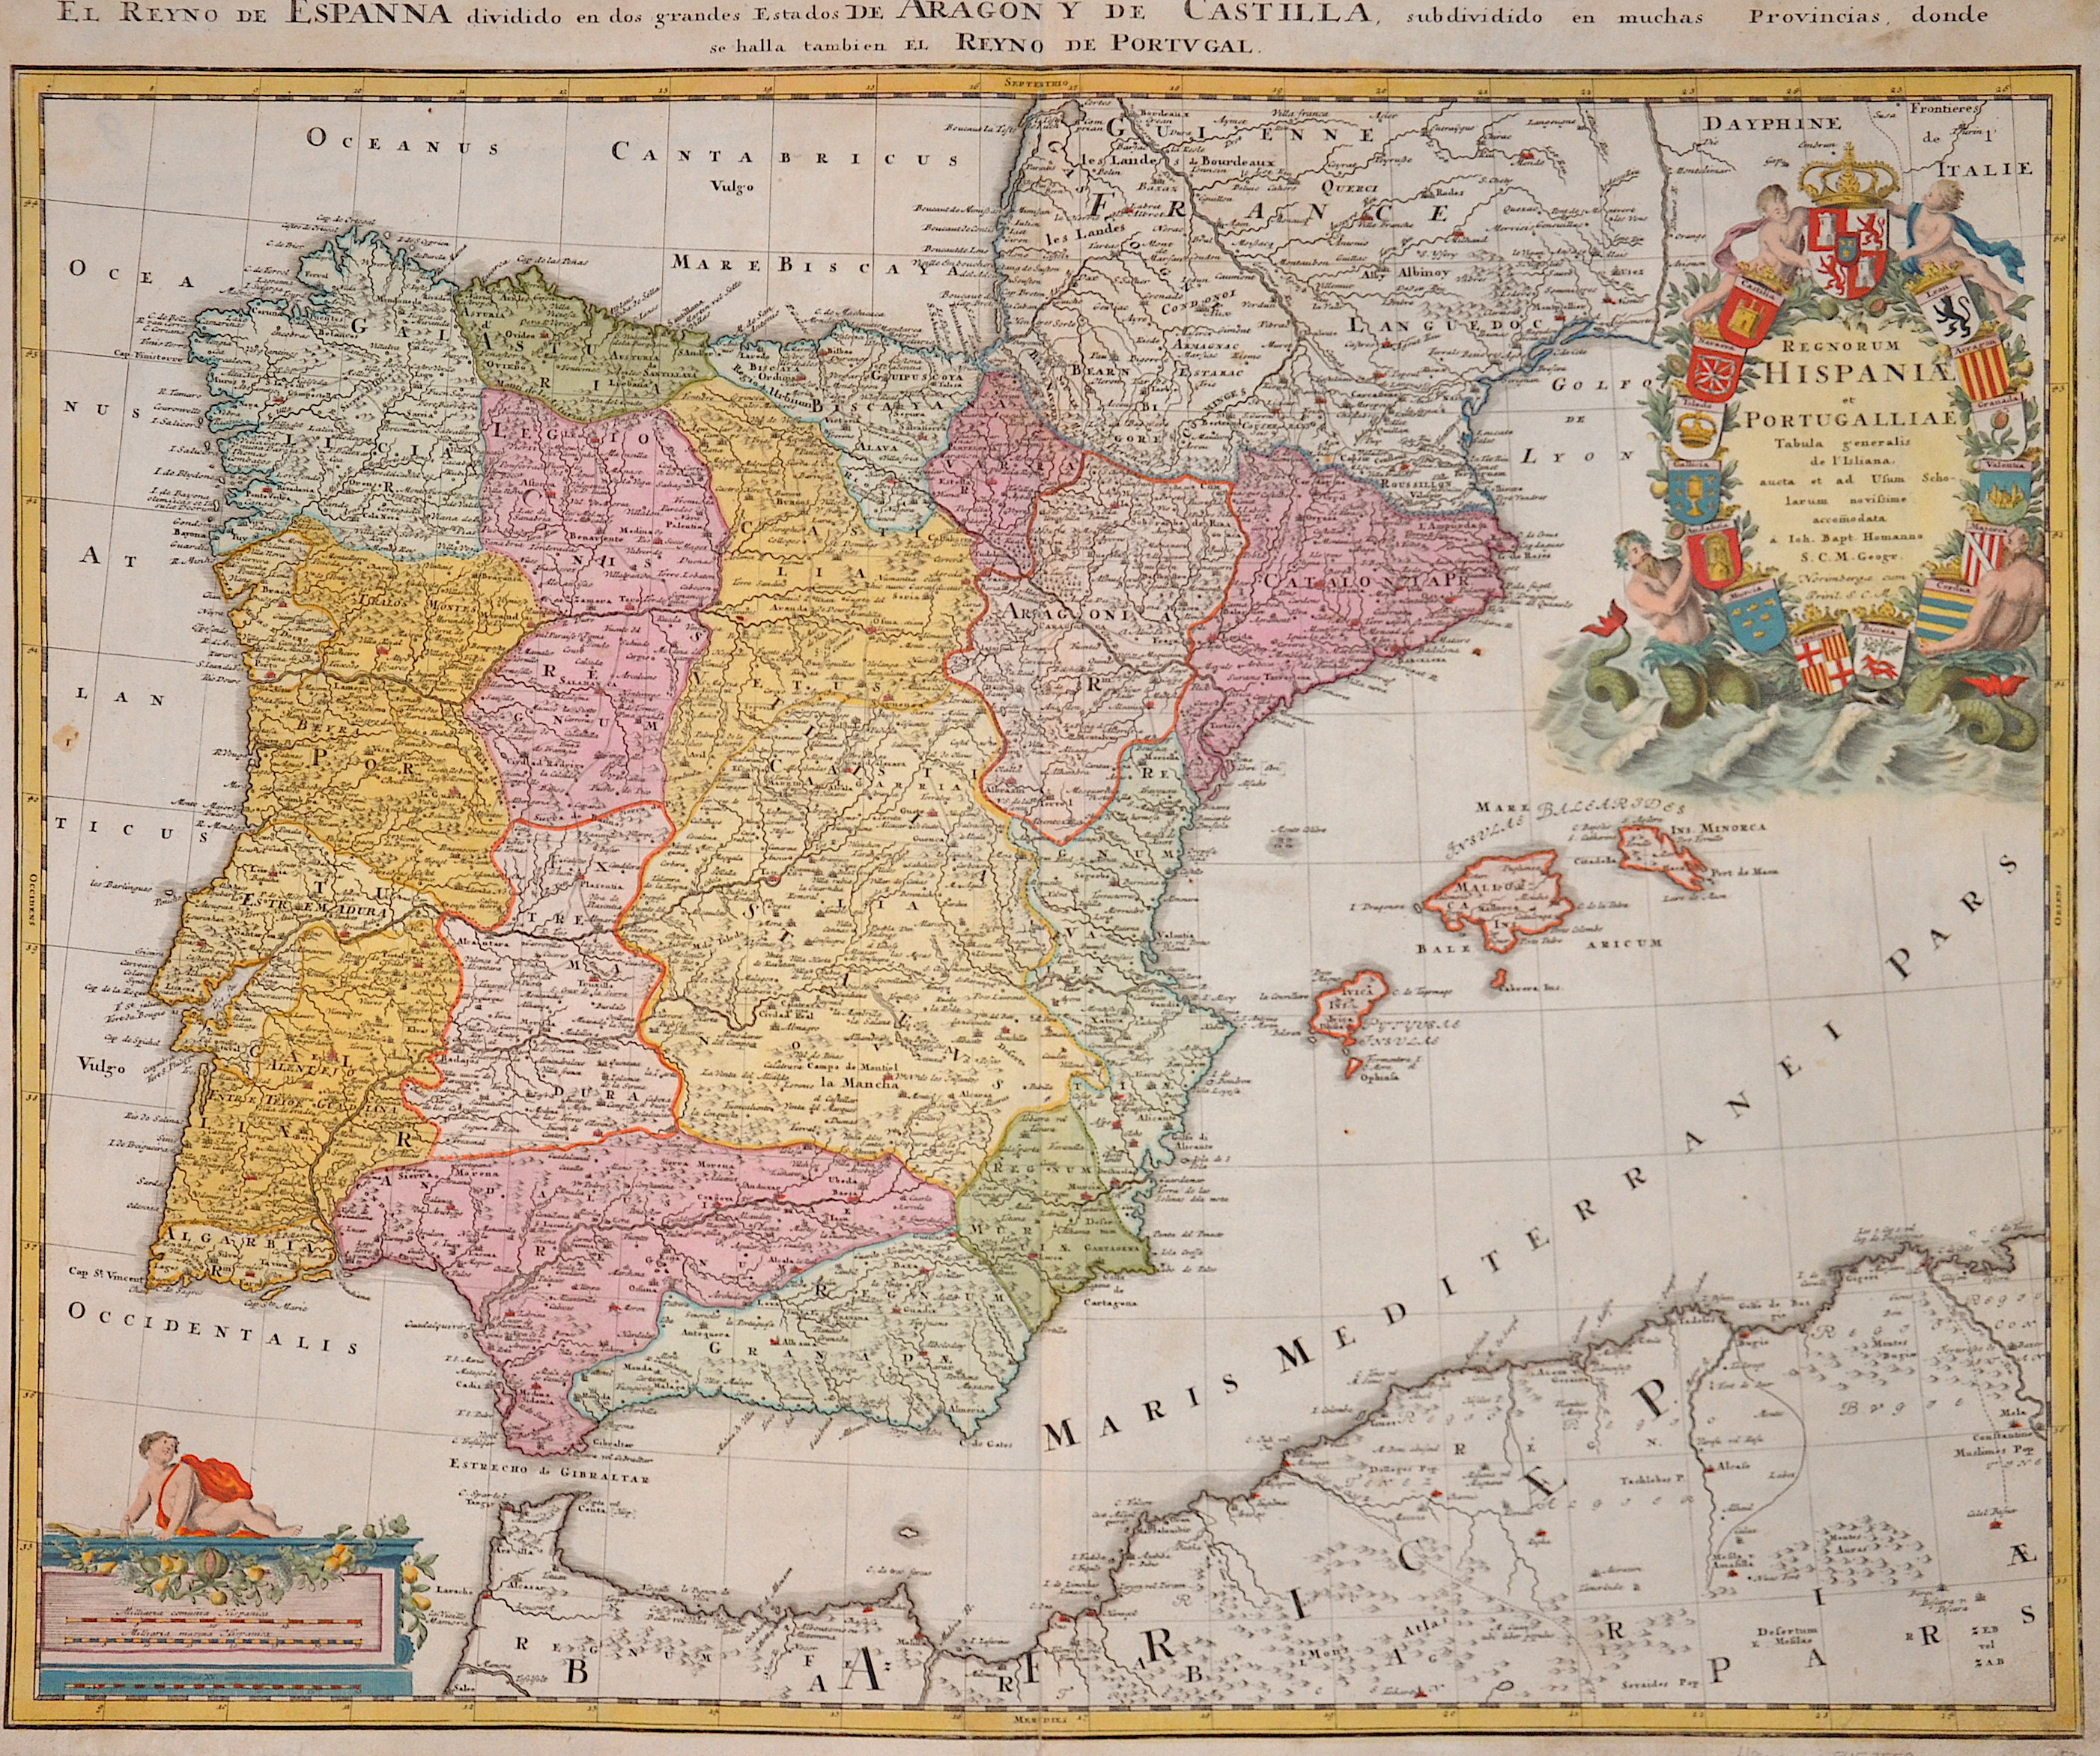 Homann  Regnorum Hispaniae et Portugalliae / El Reyno de Espanna dividido en dos grandes Estados de Aragony de Castilla…